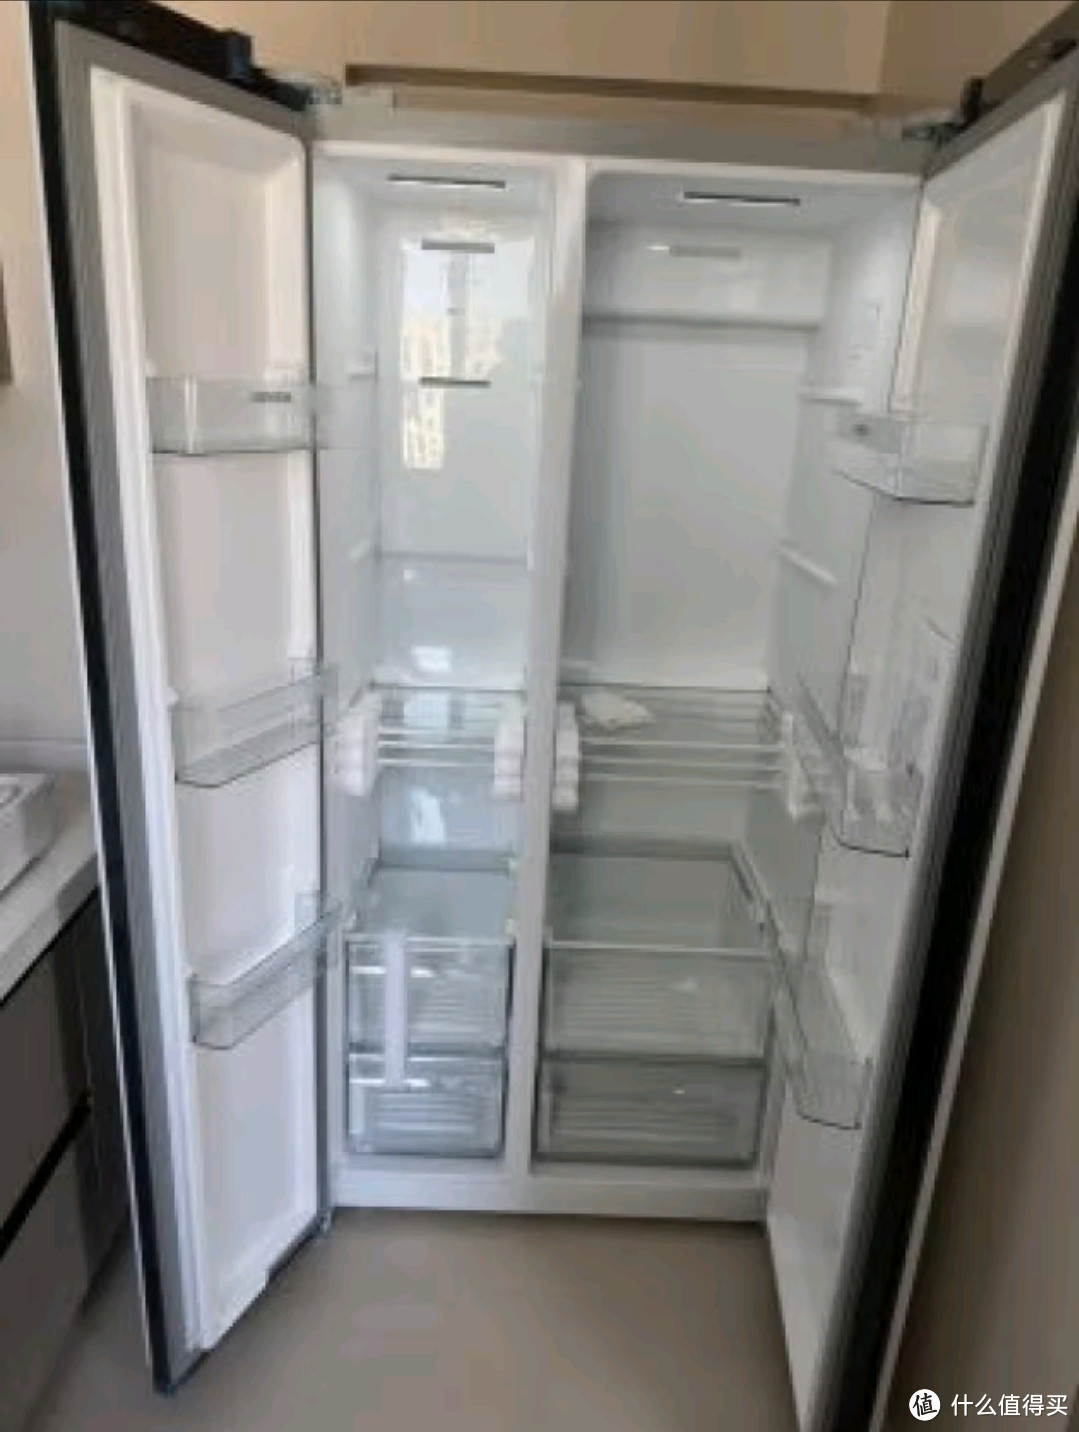 大容量的变频冰箱